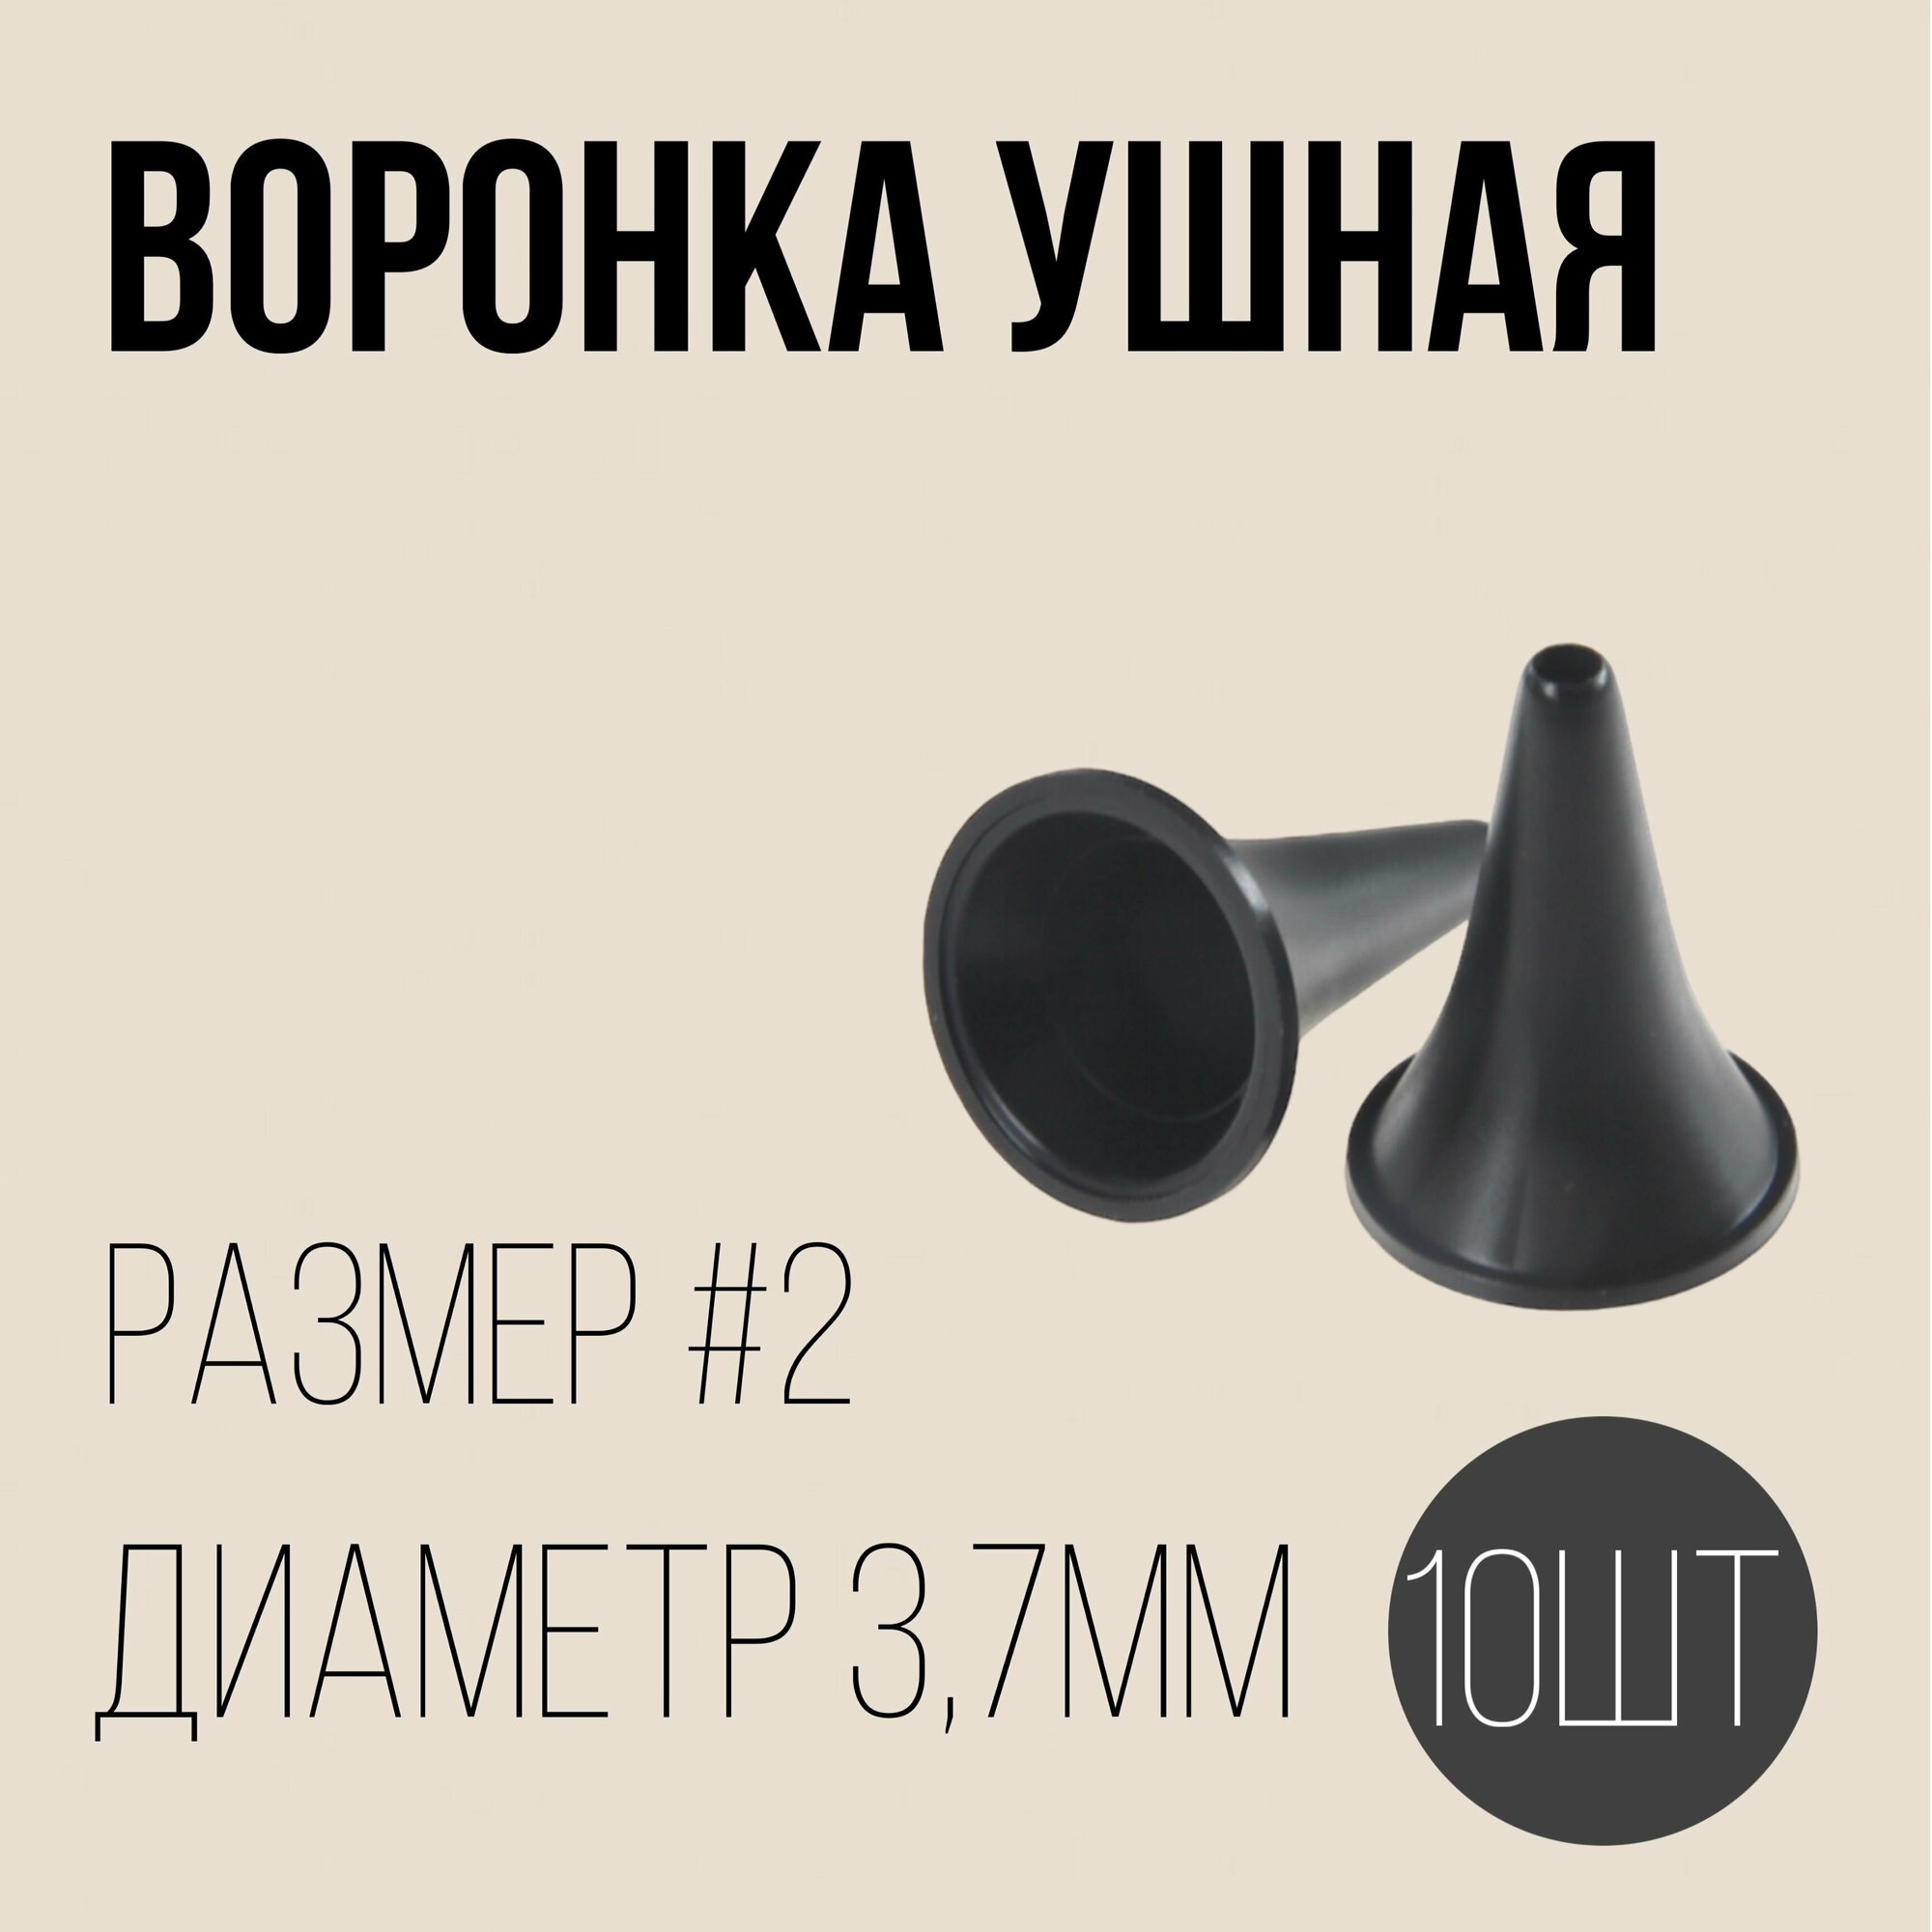 Воронка ушная №3 комплект - 10 полимерные изделия